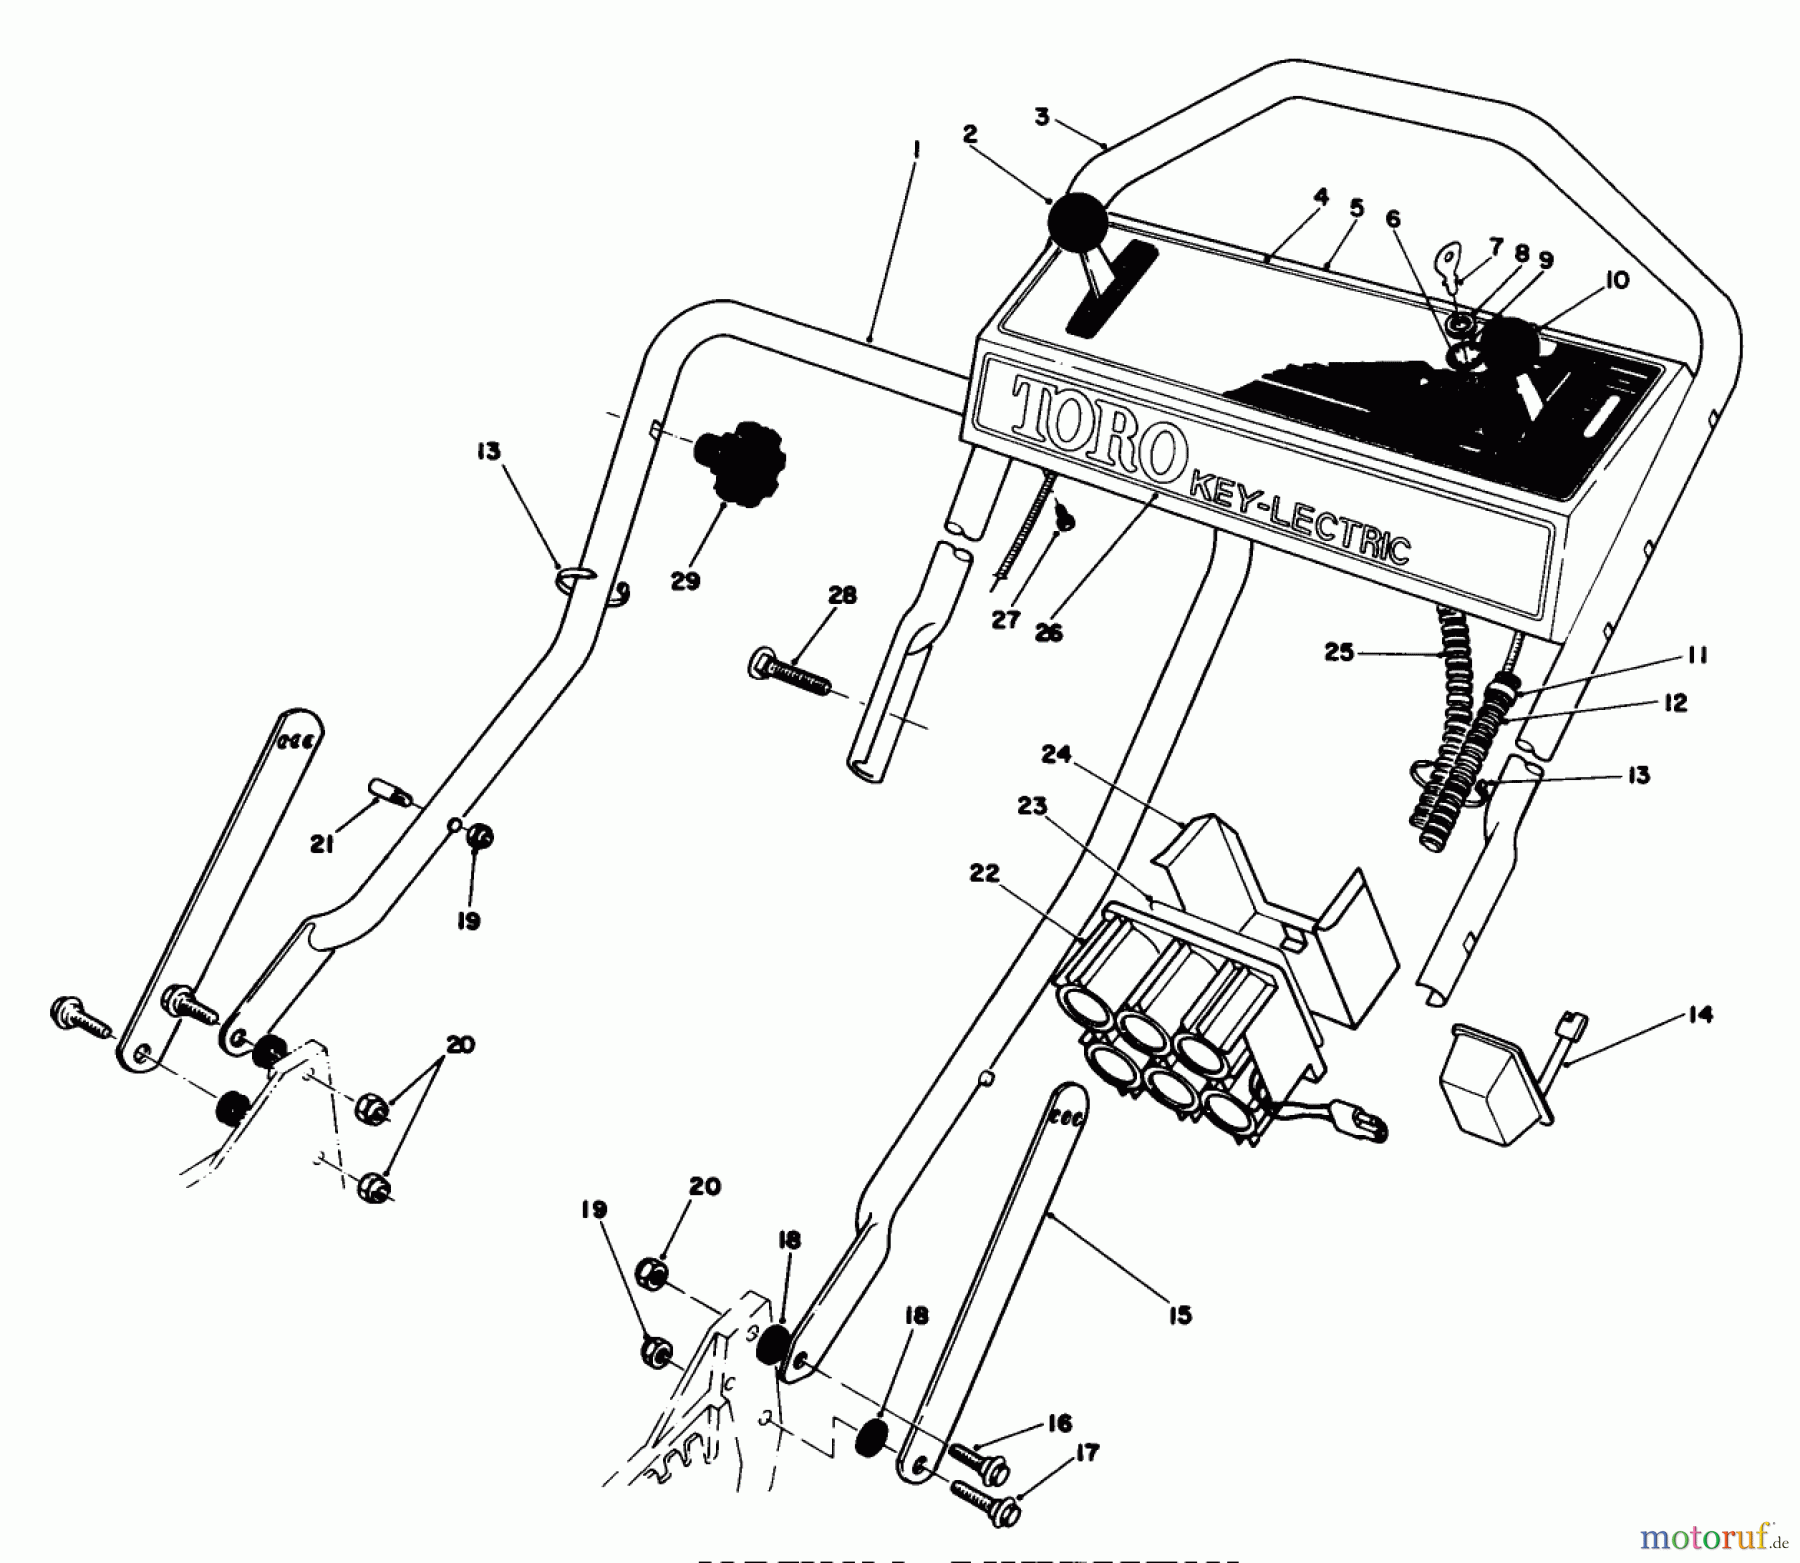  Toro Neu Mowers, Walk-Behind Seite 1 20629C - Toro Lawnmower, 1986 (6000001-6999999) HANDLE ASSEMBLY